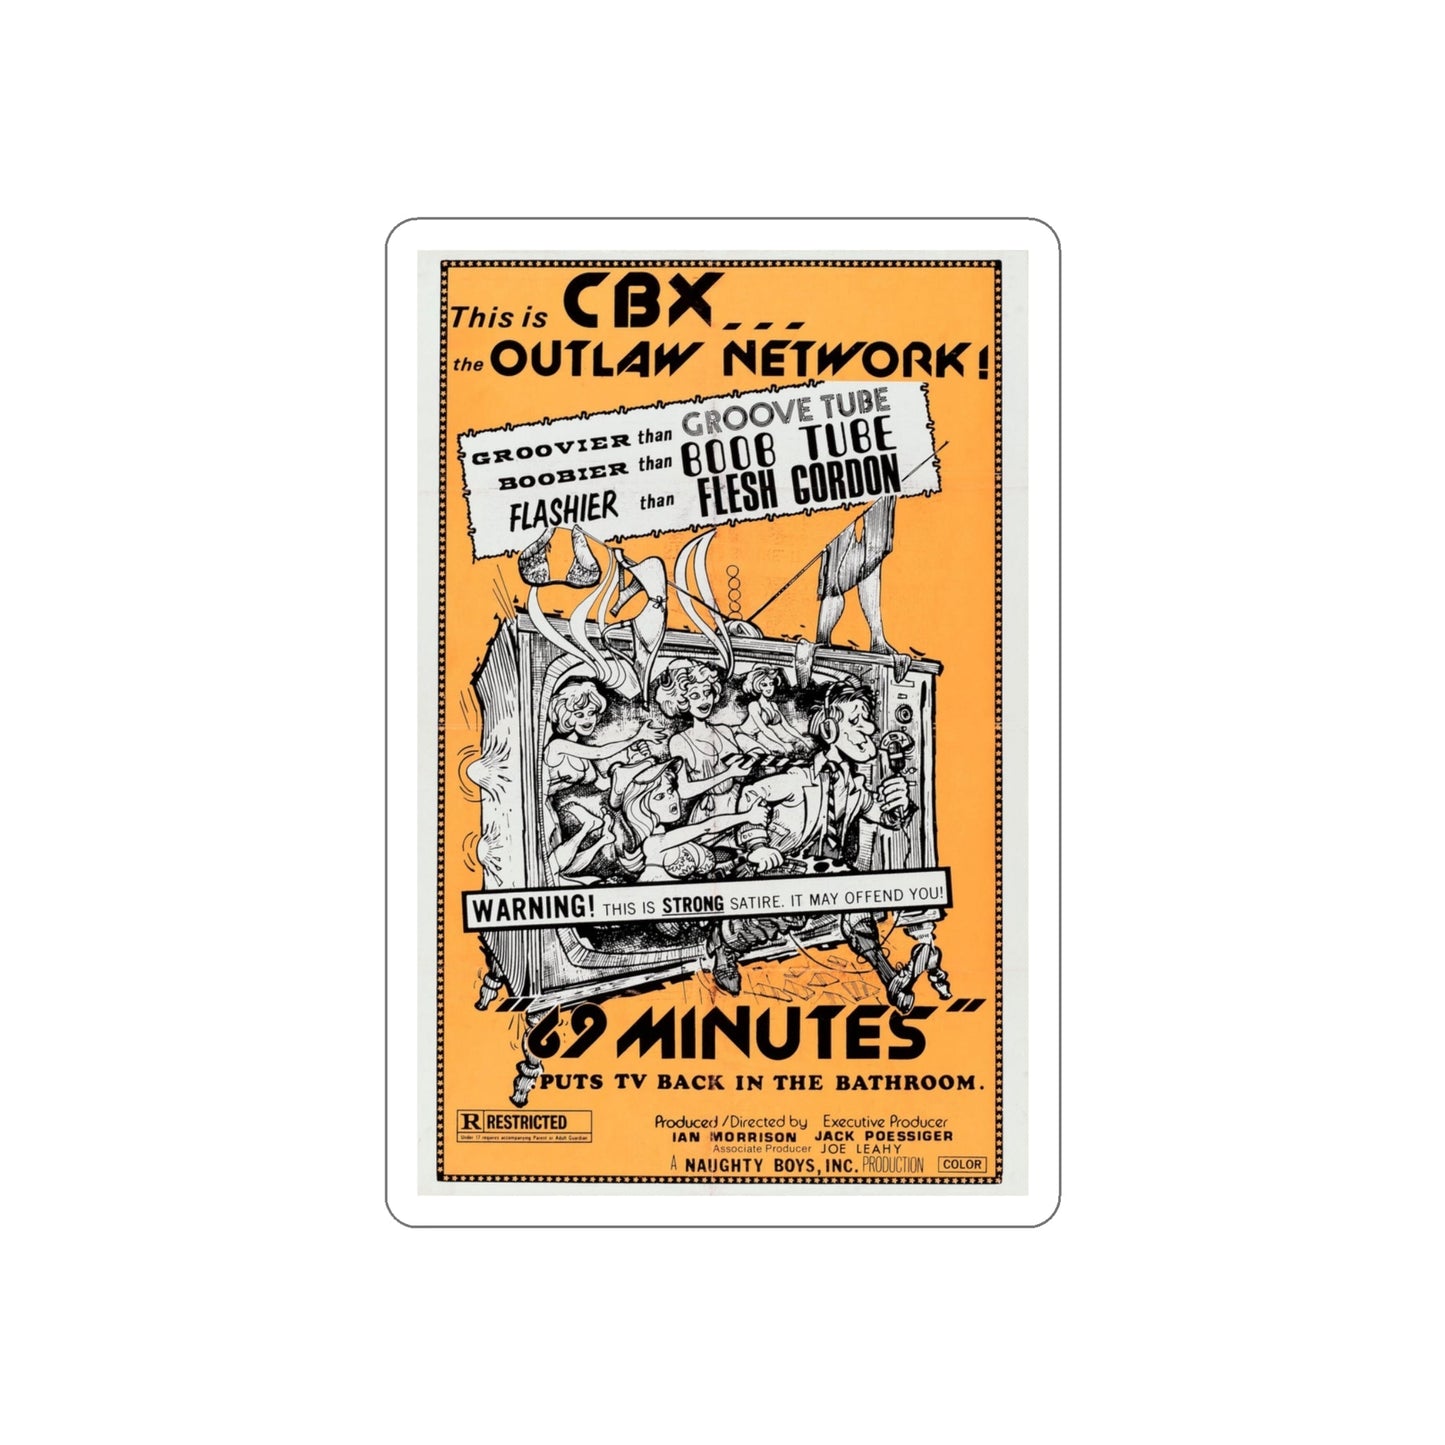 69 MINUTES 1976 Movie Poster STICKER Vinyl Die-Cut Decal-4 Inch-The Sticker Space